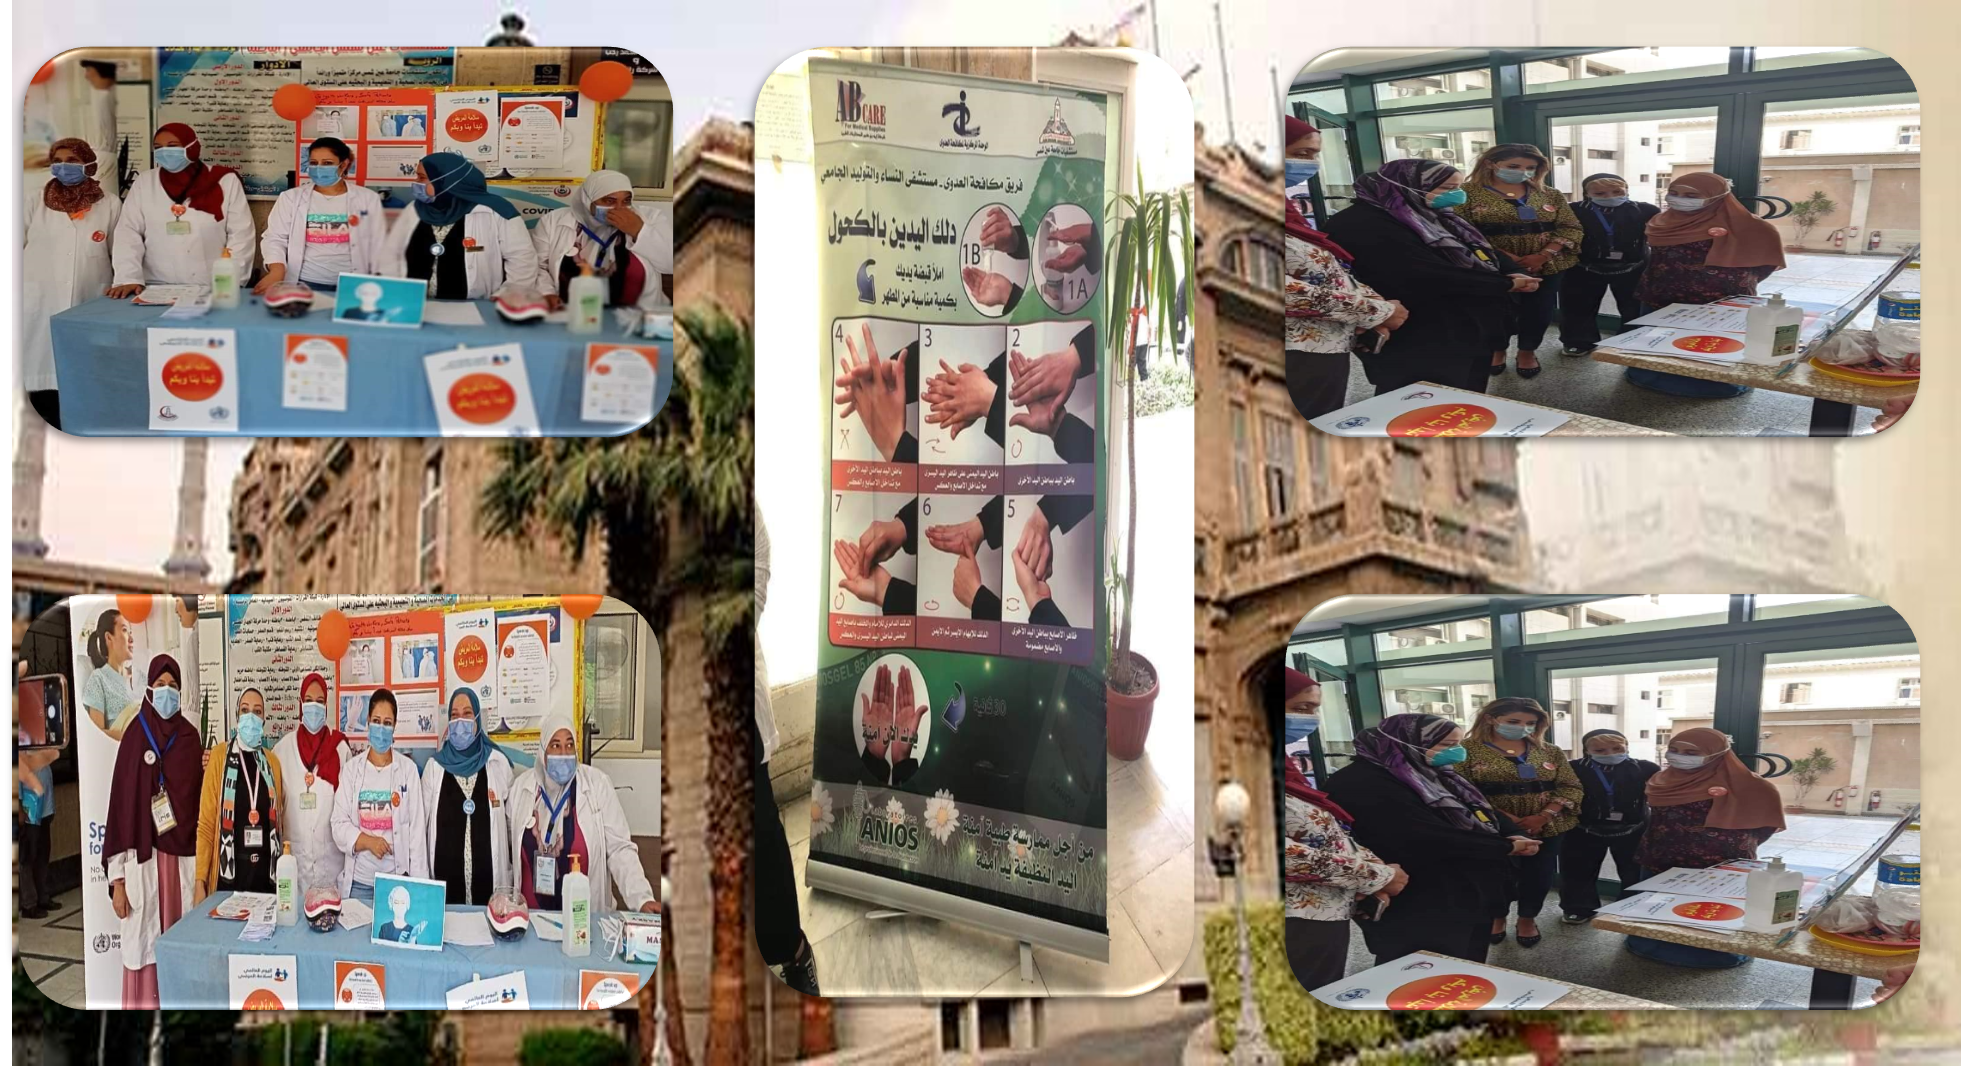 كلية الطب ومستشفيات جامعة عين شمس يحتفلون باليوم العالمي لسلامة المريض والأطقم الطبية